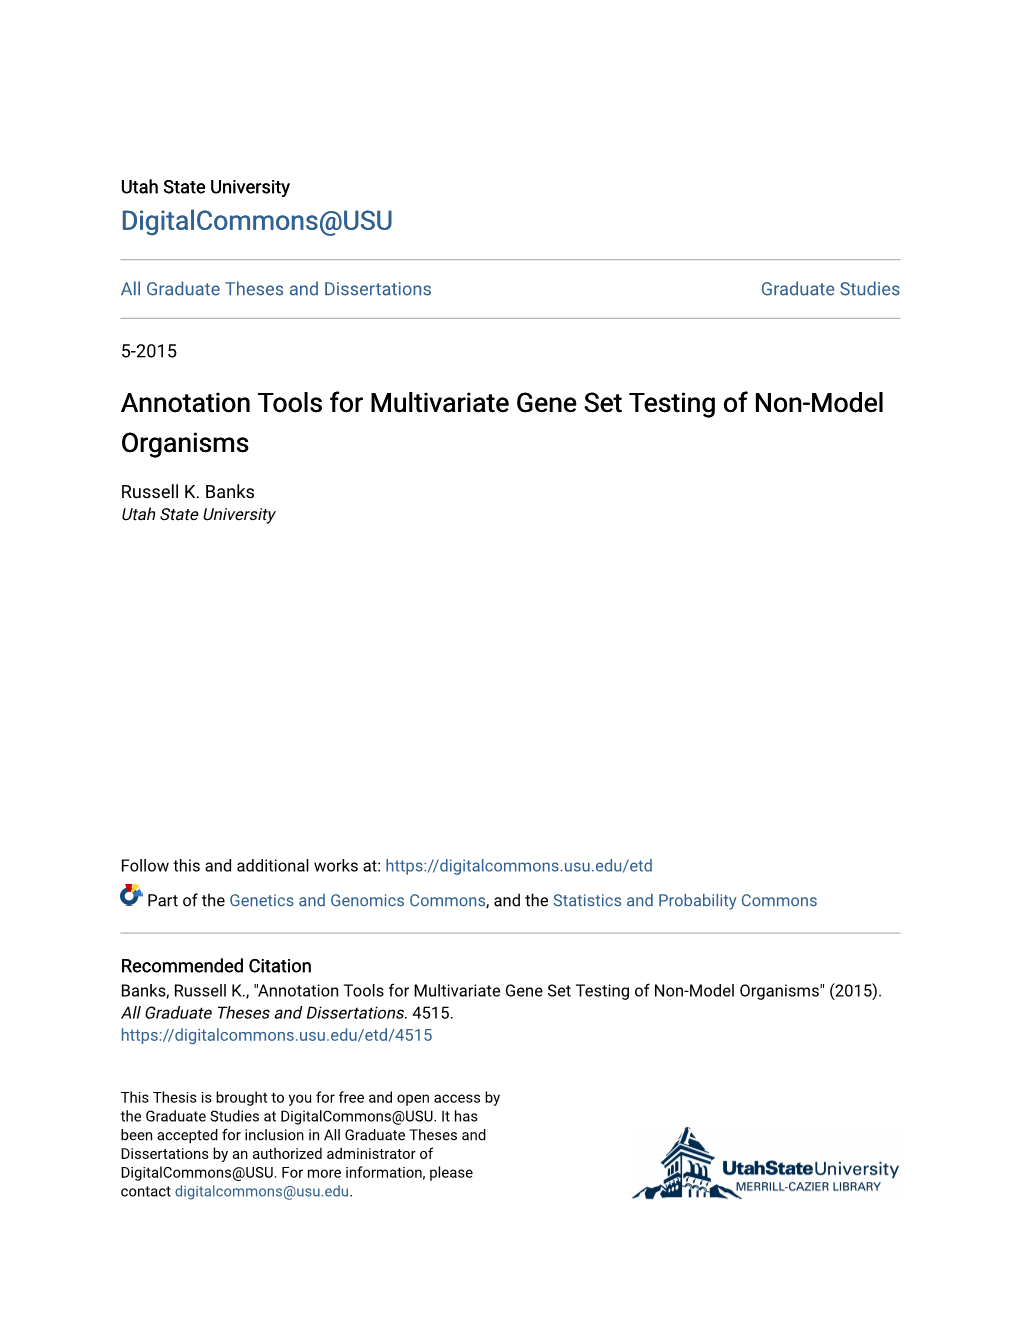 Annotation Tools for Multivariate Gene Set Testing of Non-Model Organisms